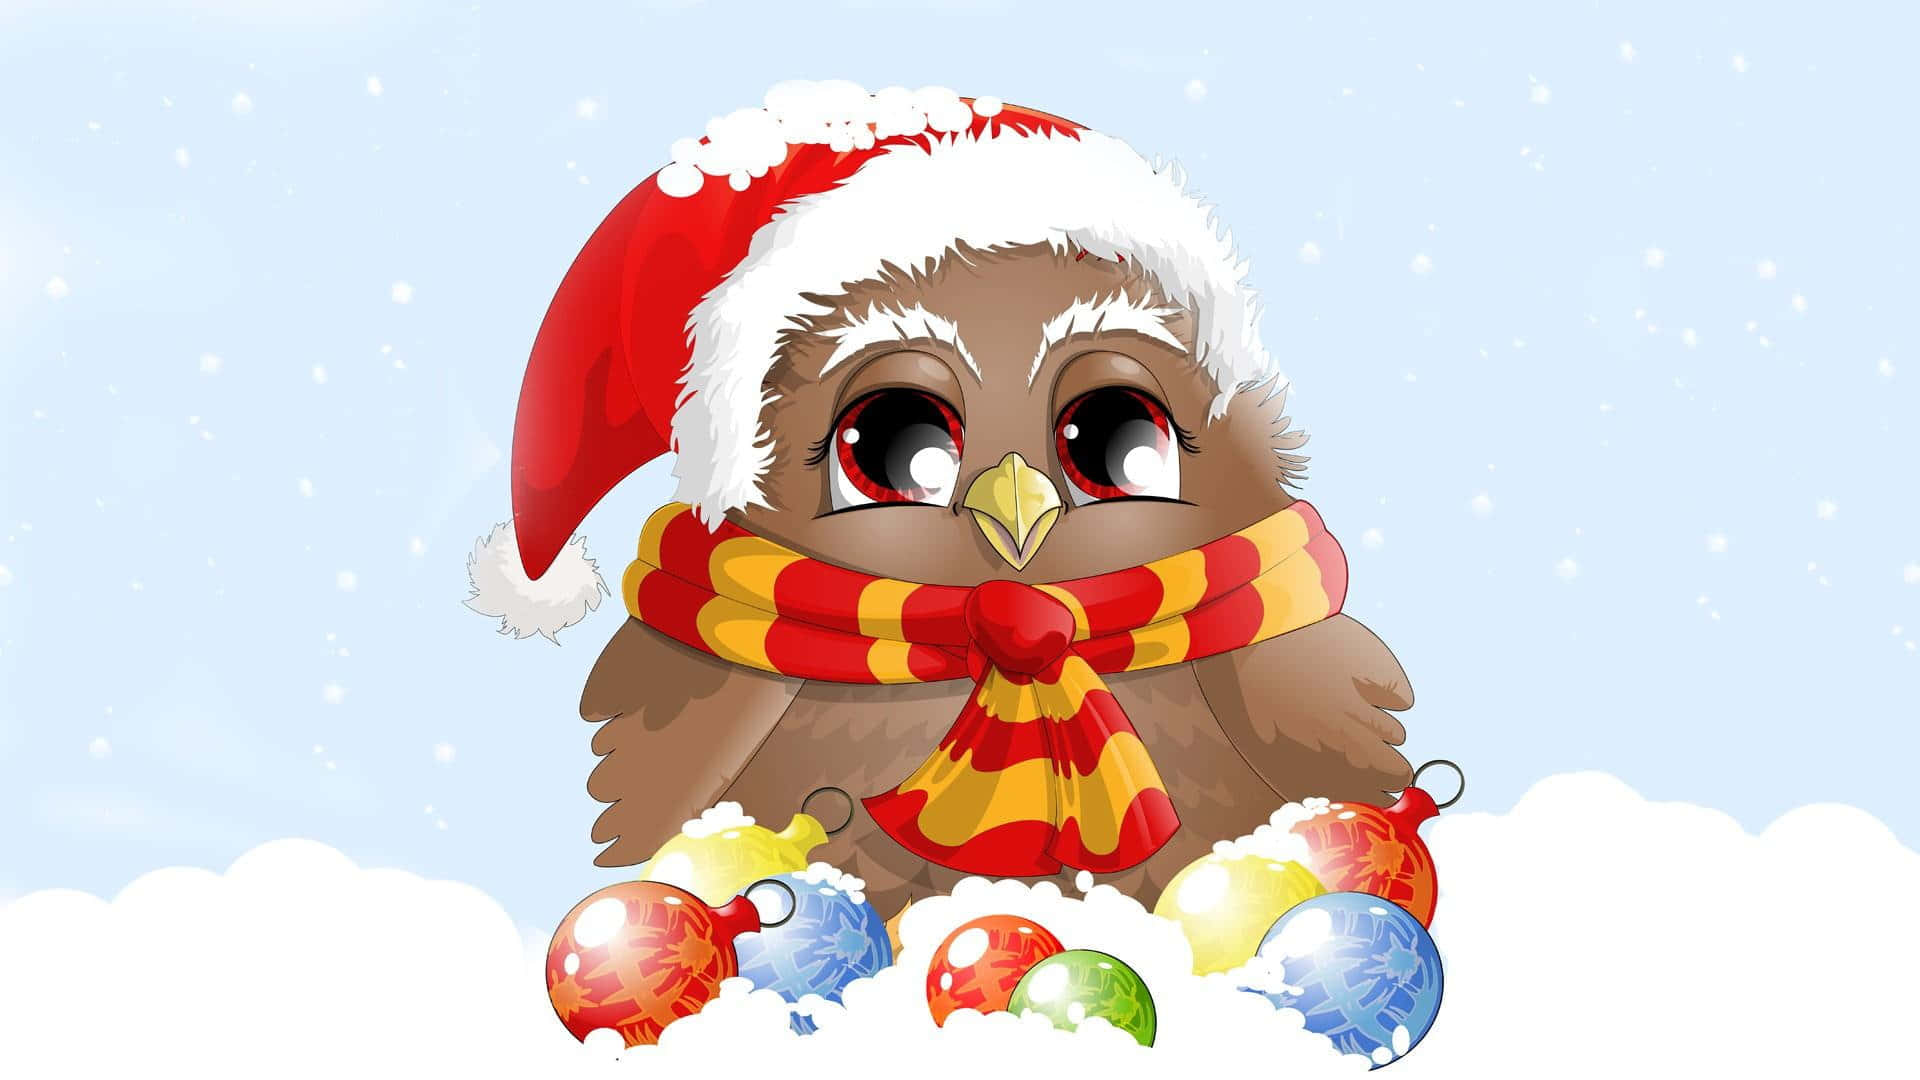 Abbraccialo Spirito Delle Festività Con Un Dolce Natale Estetico!